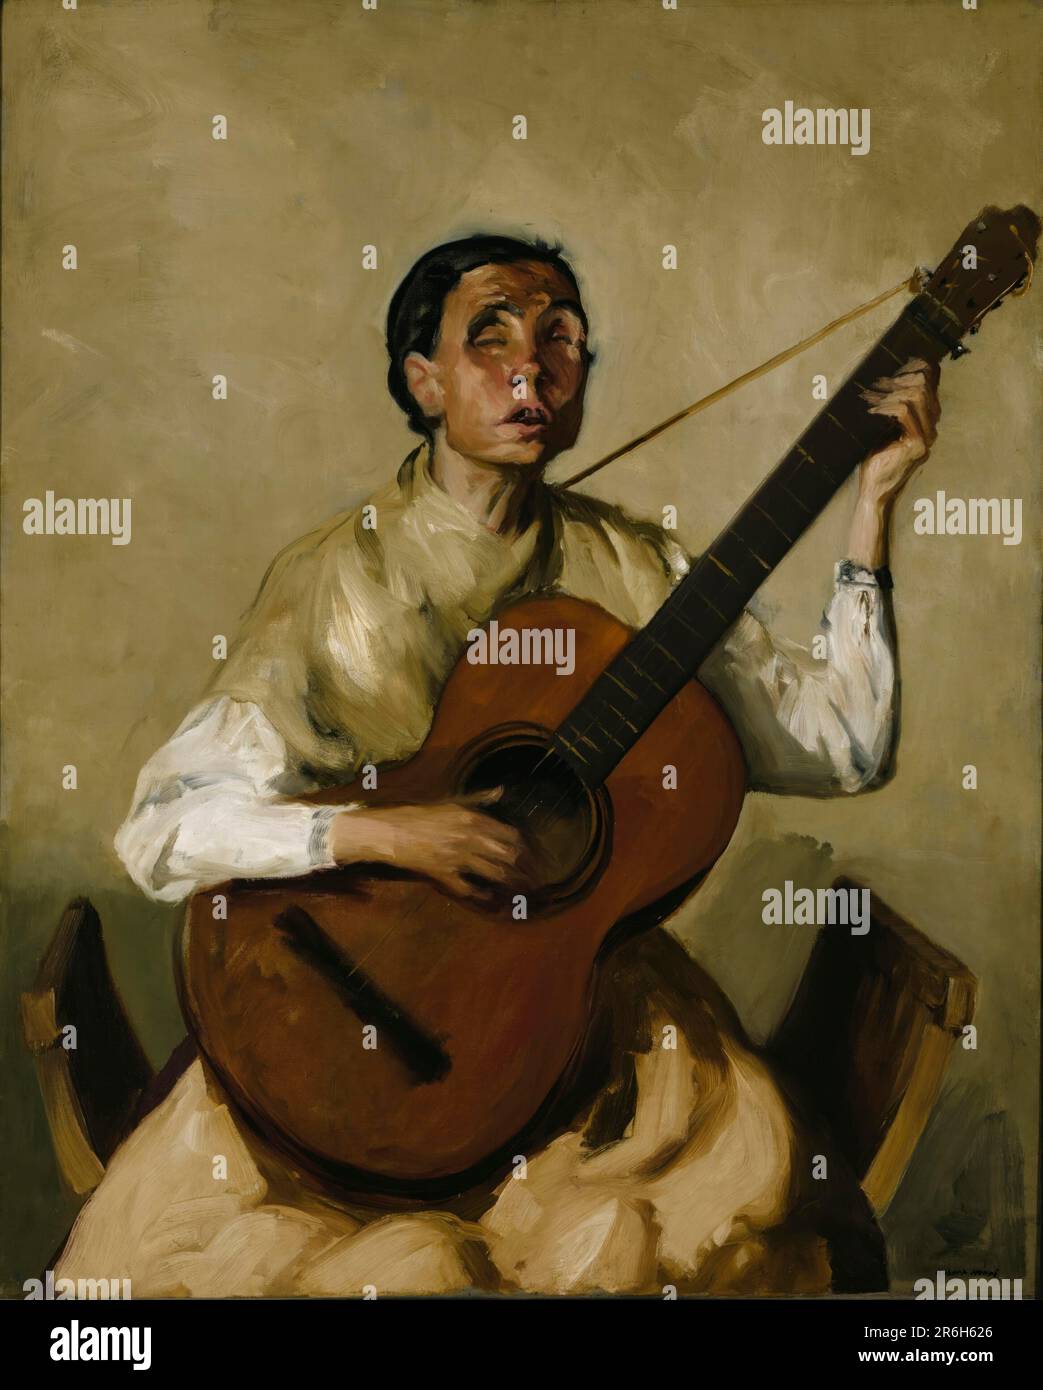 Blinder Spanischer Singer. Datum: 1912. Öl auf Segeltuch. Museum: Smithsonian American Art Museum. Stockfoto